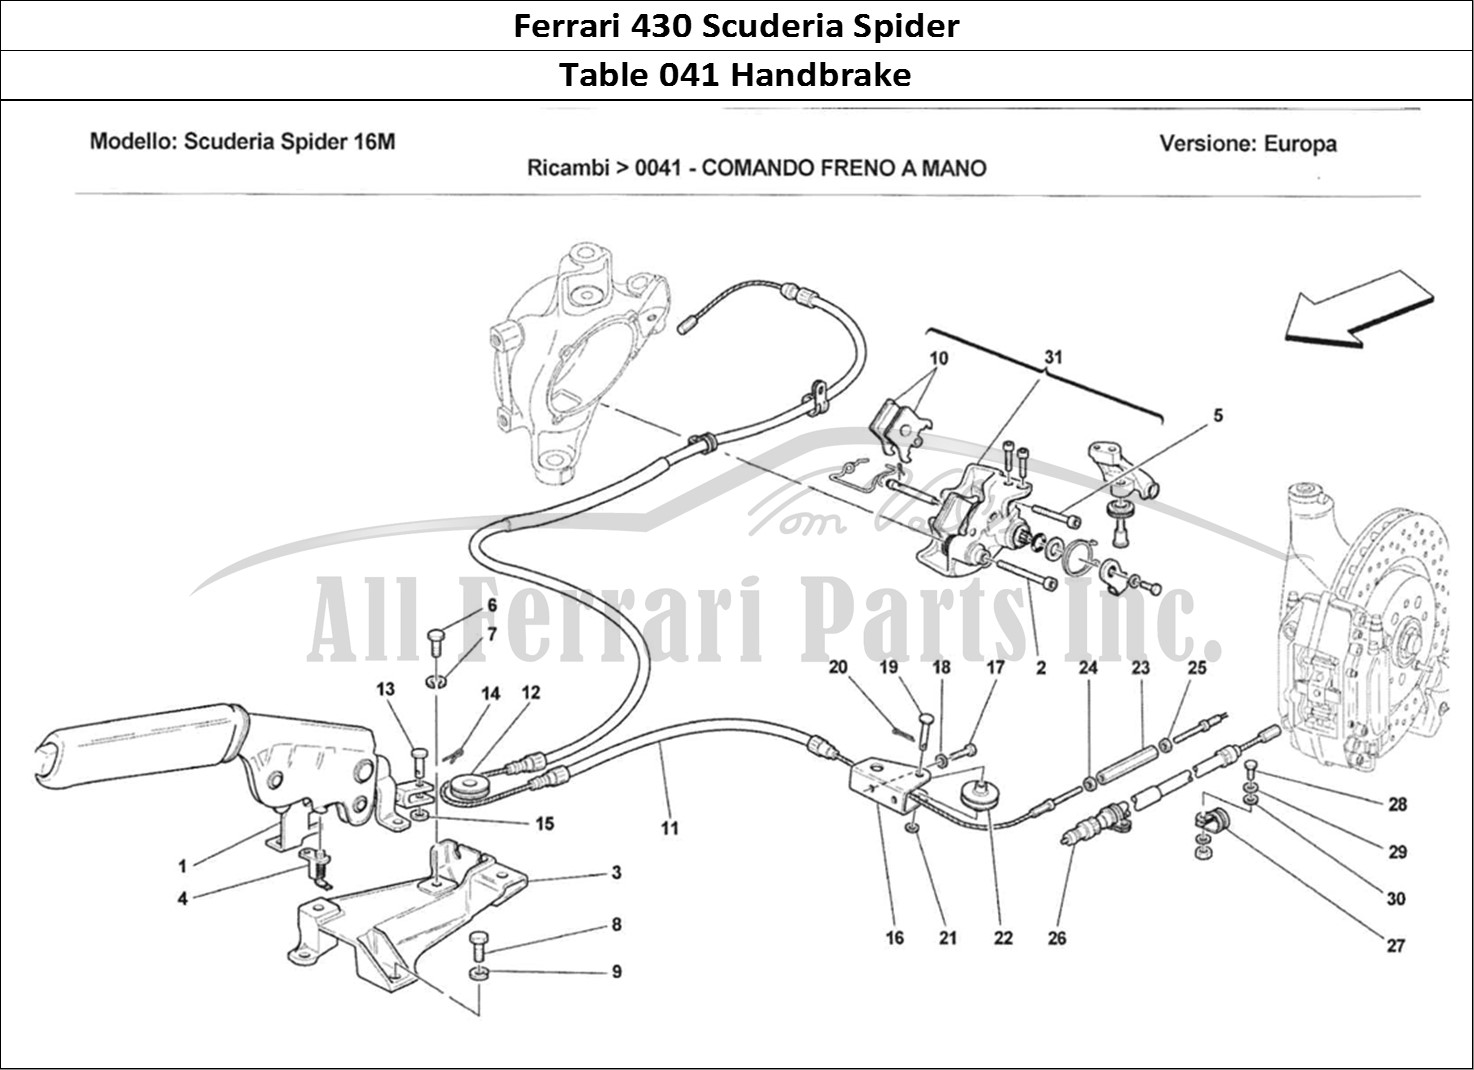 Ferrari Parts Ferrari 430 Scuderia Spider 16M Page 041 Comando Freno a Mano